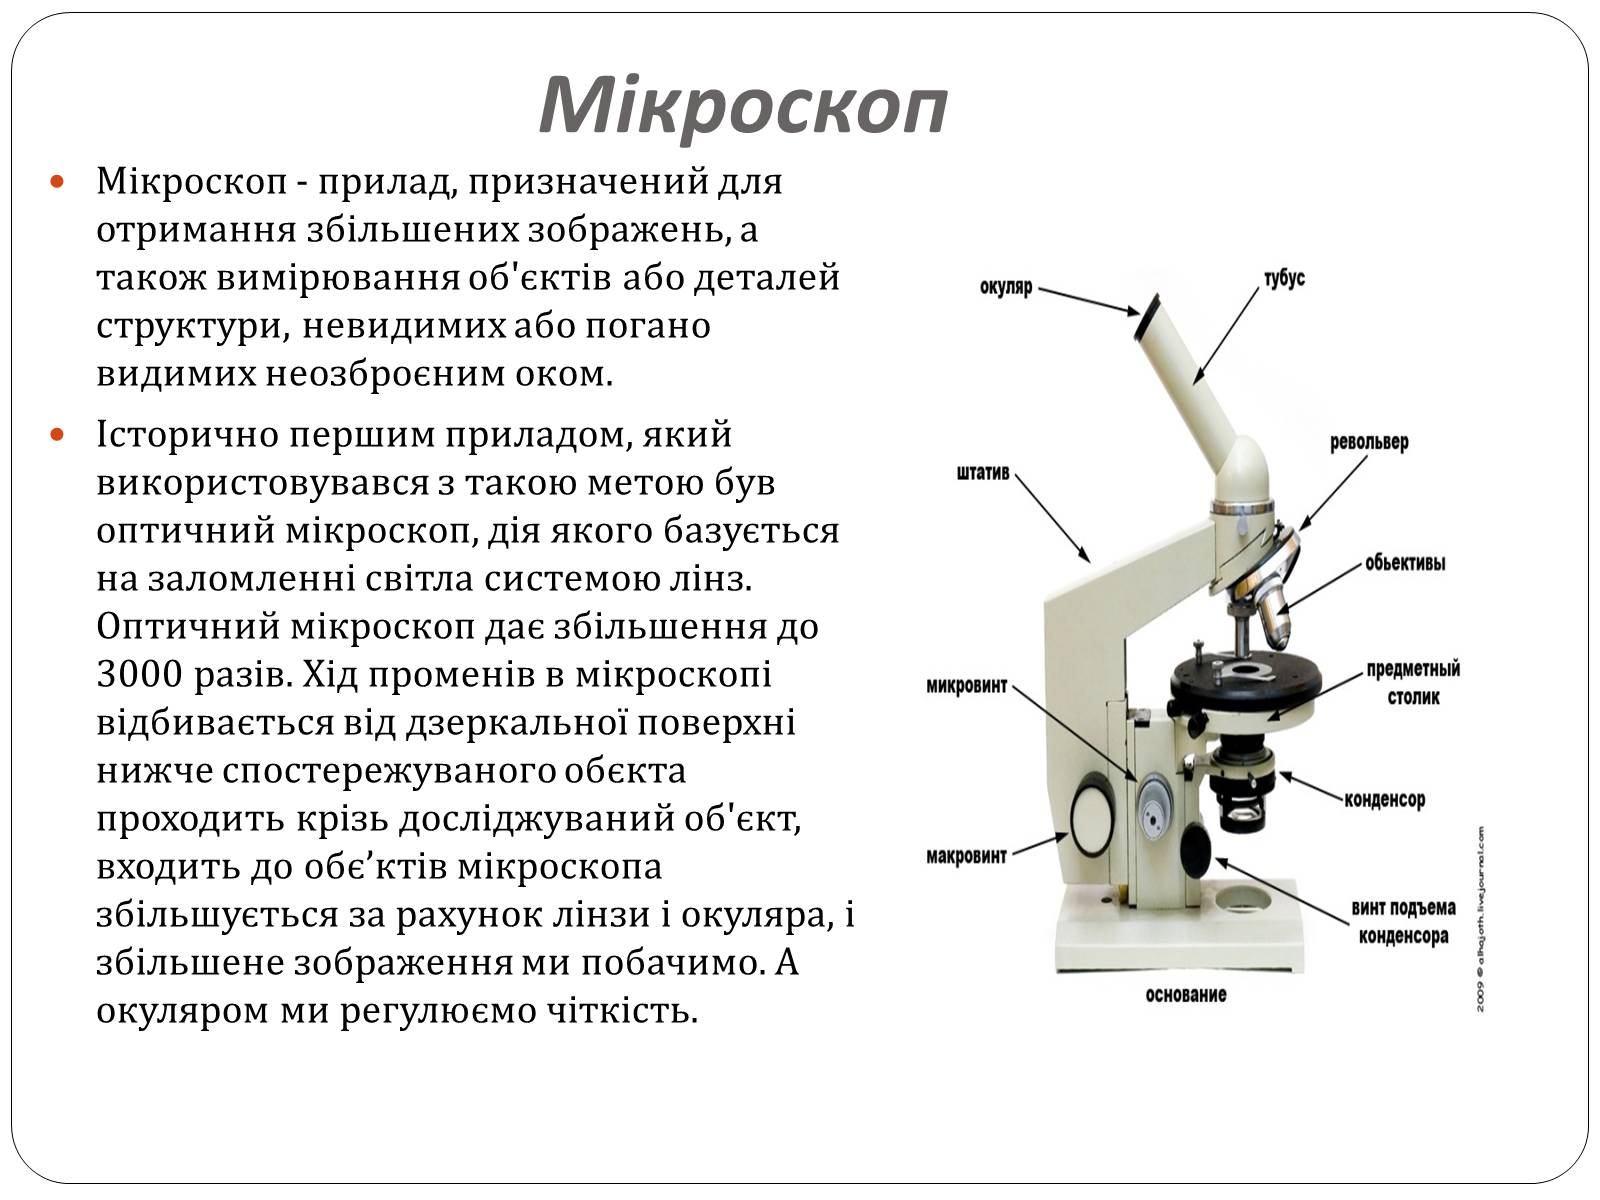 Какую функцию выполняет столик в микроскопе. Предметный столик микроскопа Назначение. Предметный столик микроскопа Биолам. Строение микроскопа конденсор. Конденсор микроскопа Назначение.